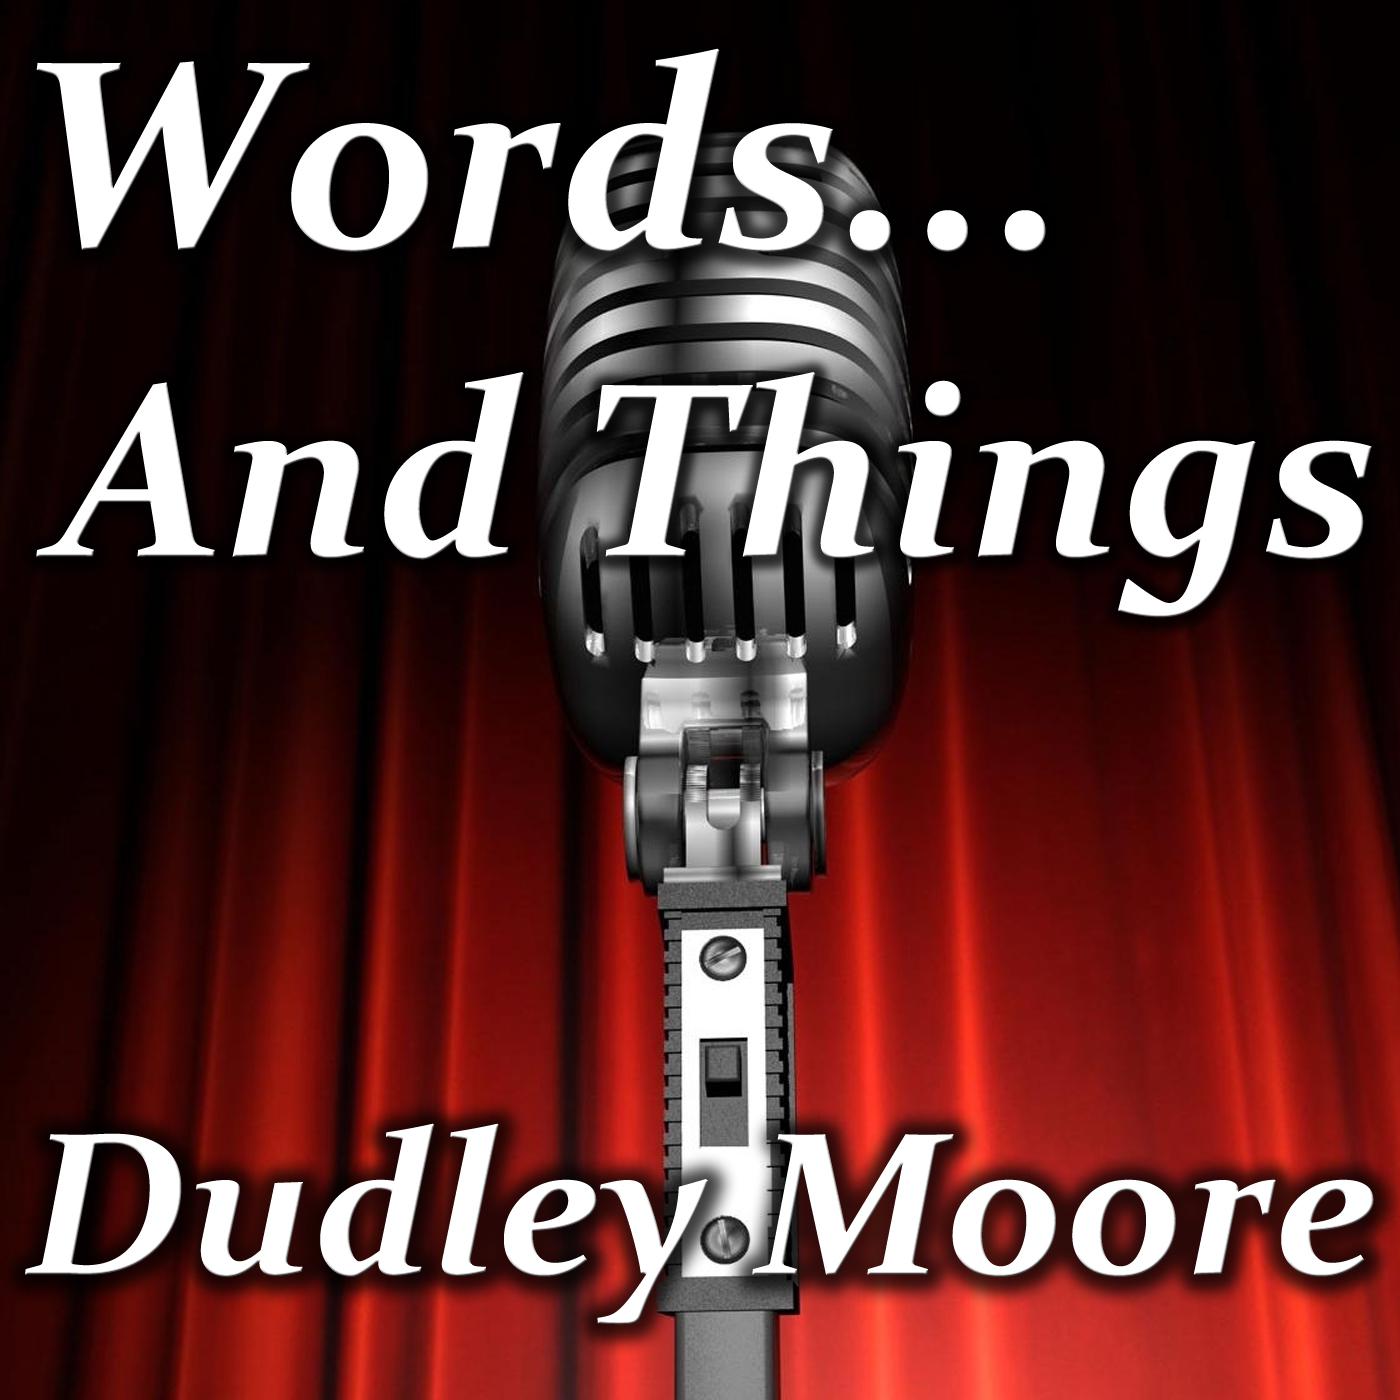 Dudley Moore - Urn Burial